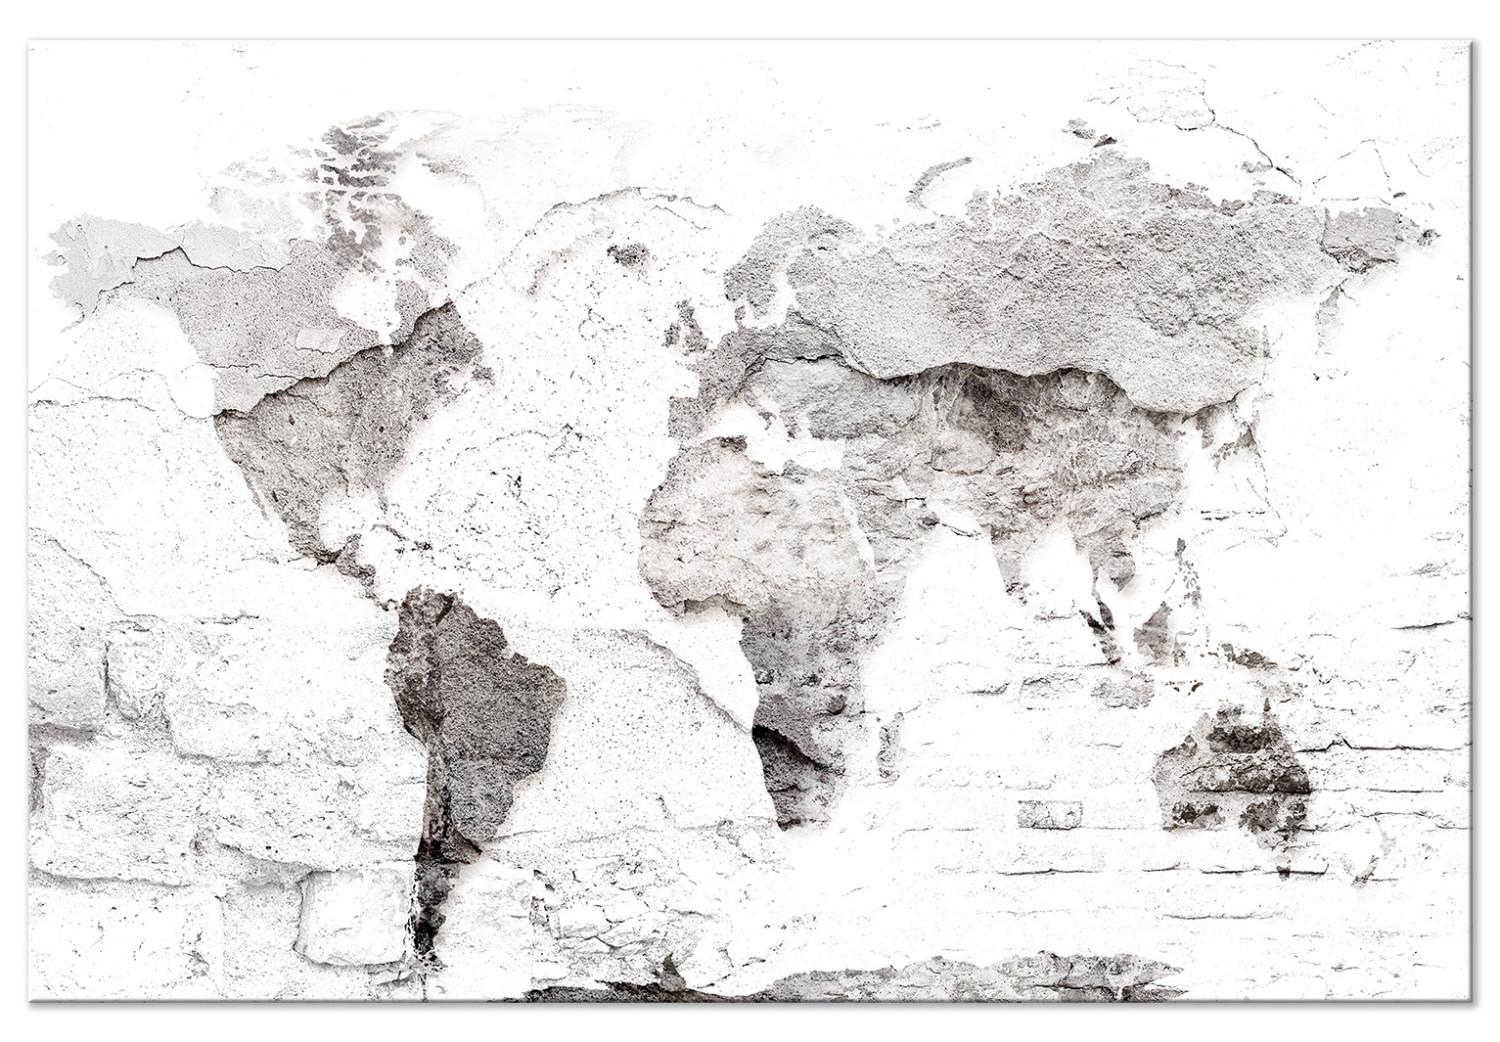 Cuadro decorativo Mapa en blanco (1 parte) - mapa del mundo sobre textura de ladrillo